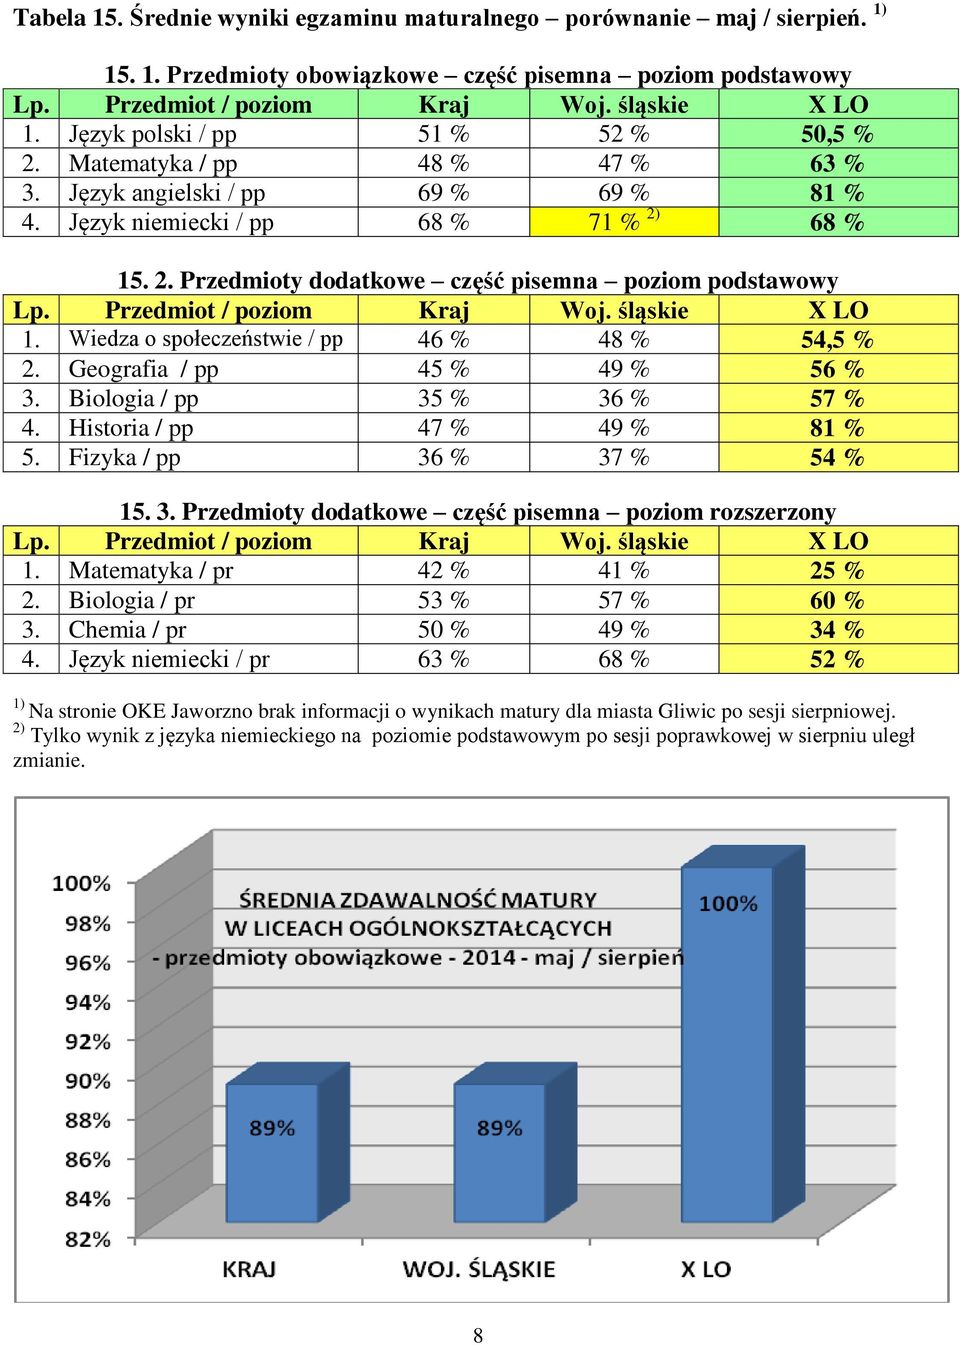 Przedmiot / poziom Kraj Woj. śląskie X LO 1. Wiedza o społeczeństwie / pp 46 % 48 % 54,5 % 2. Geografia / pp 45 % 49 % 56 % 3. Biologia / pp 35 % 36 % 57 % 4. Historia / pp 47 % 49 % 81 % 5.